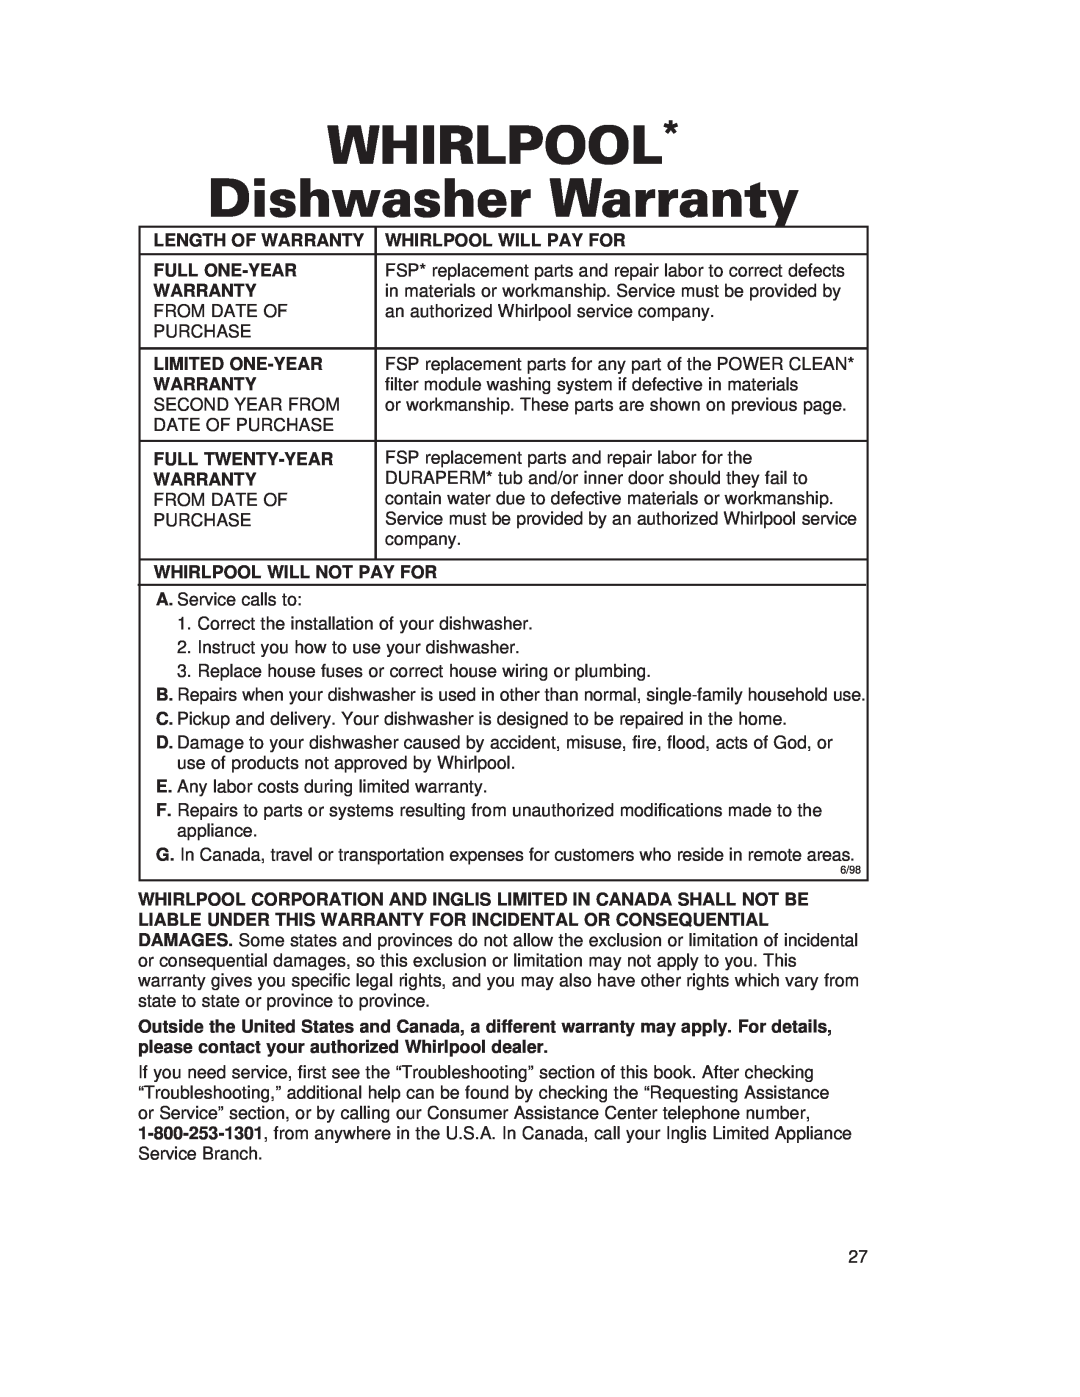 Whirlpool 910 Series warranty WHIRLPOOL Dishwasher Warranty 